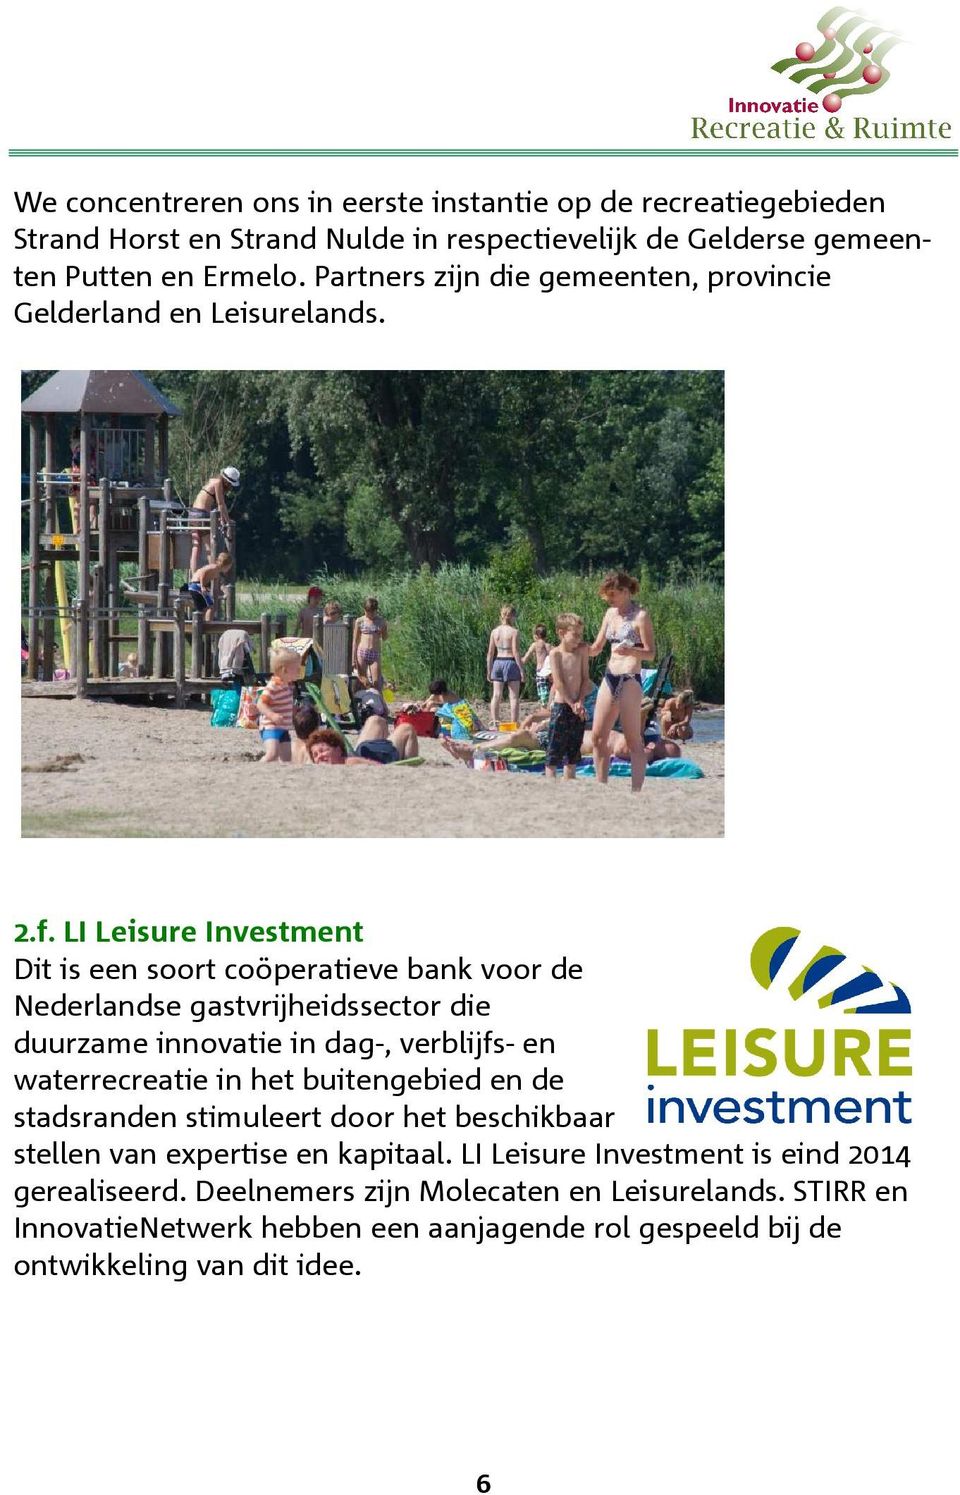 LI Leisure Investment Dit is een soort coöperatieve bank voor de Nederlandse gastvrijheidssector die duurzame innovatie in dag-, verblijfs- en waterrecreatie in het